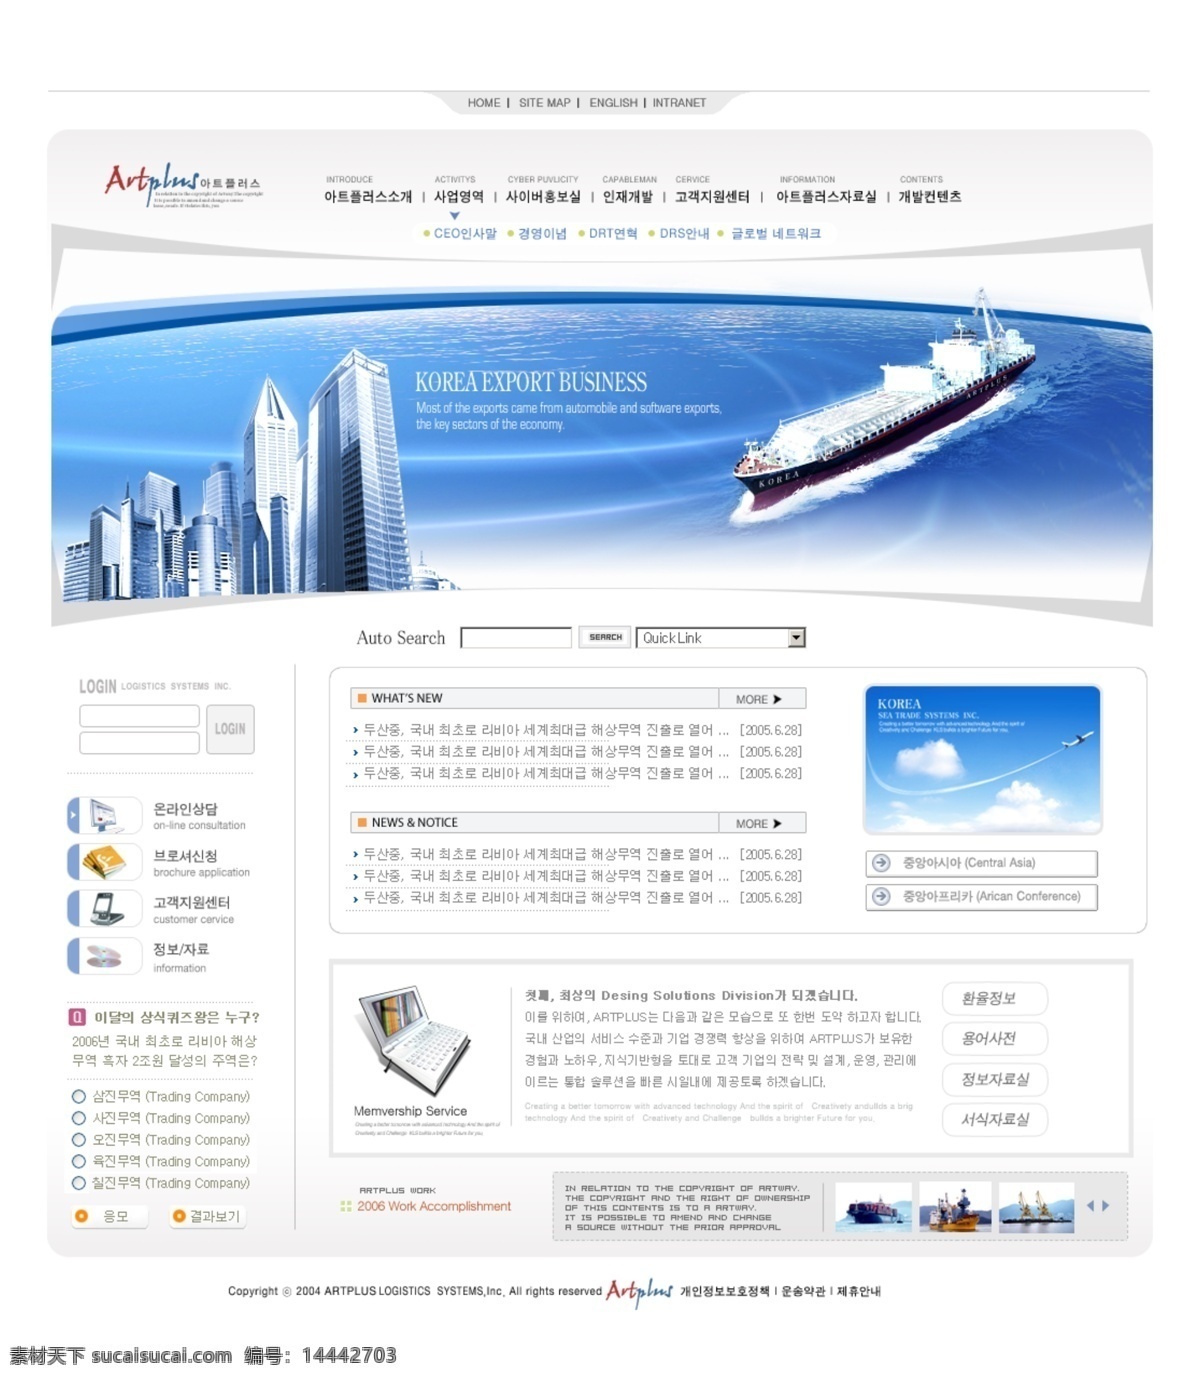 房产 设计策划 公司 网页模板 交通 网页素材 现代化 运输 商务航运 水上运输 web 界面设计 韩文模板 其他网页素材